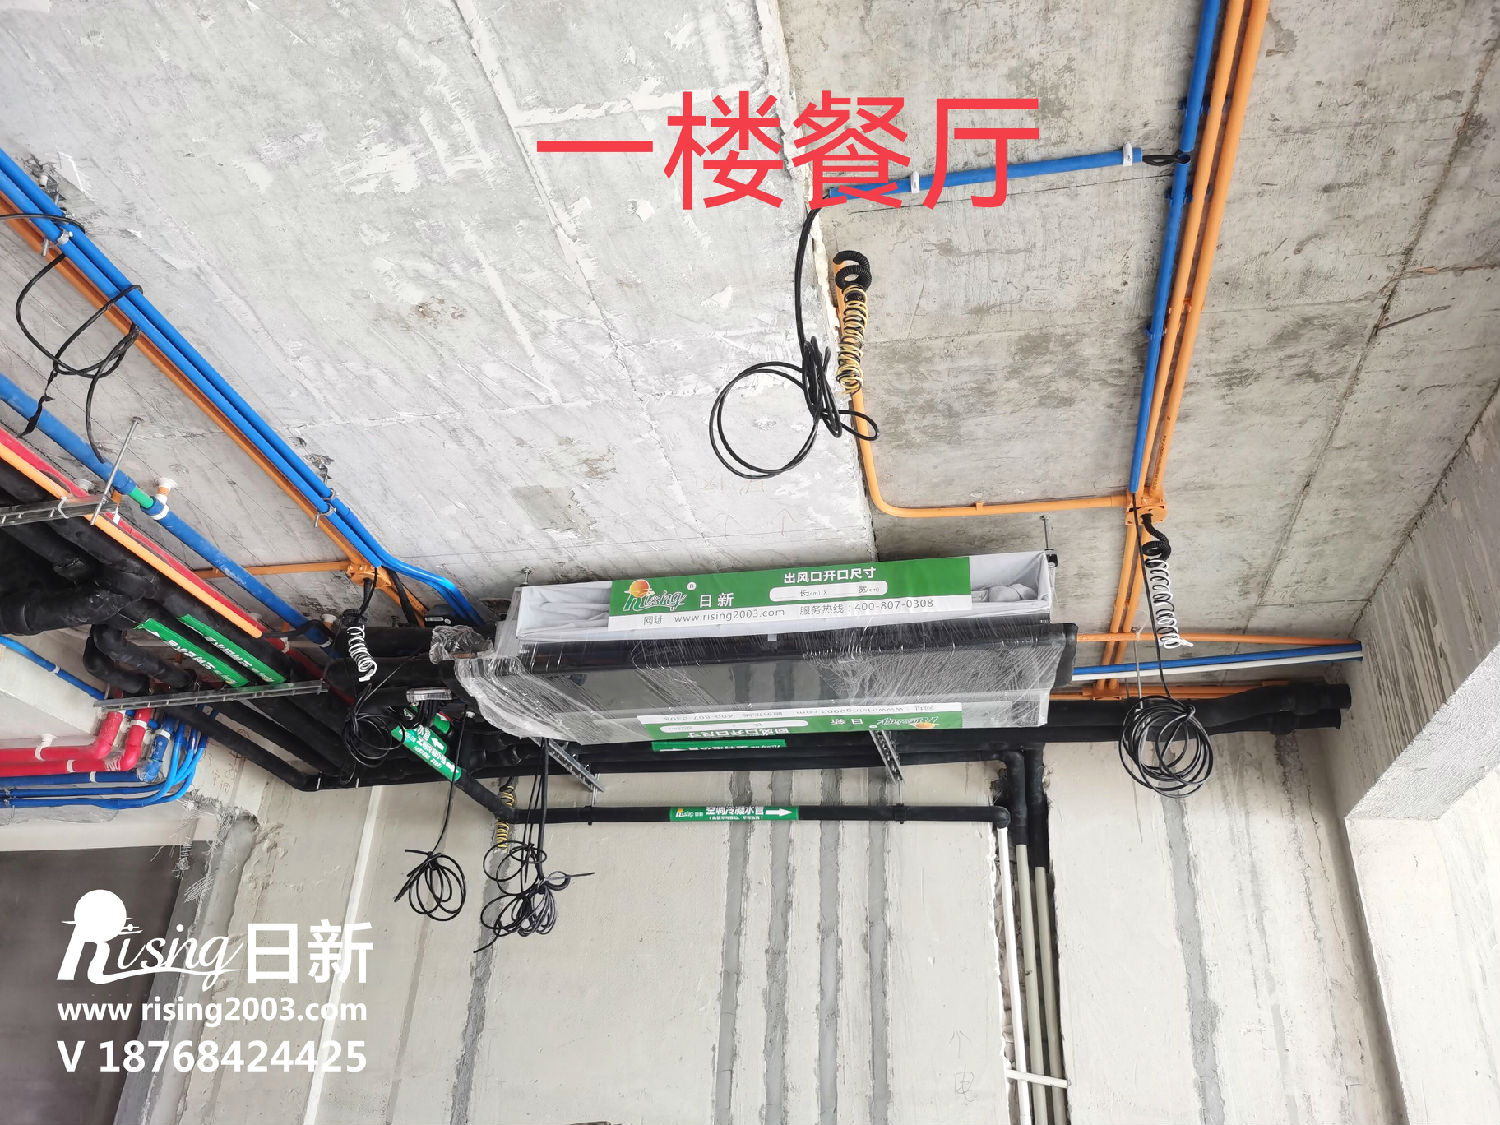 印江南别墅风冷热泵系统项目空调安装现场【日新环境】